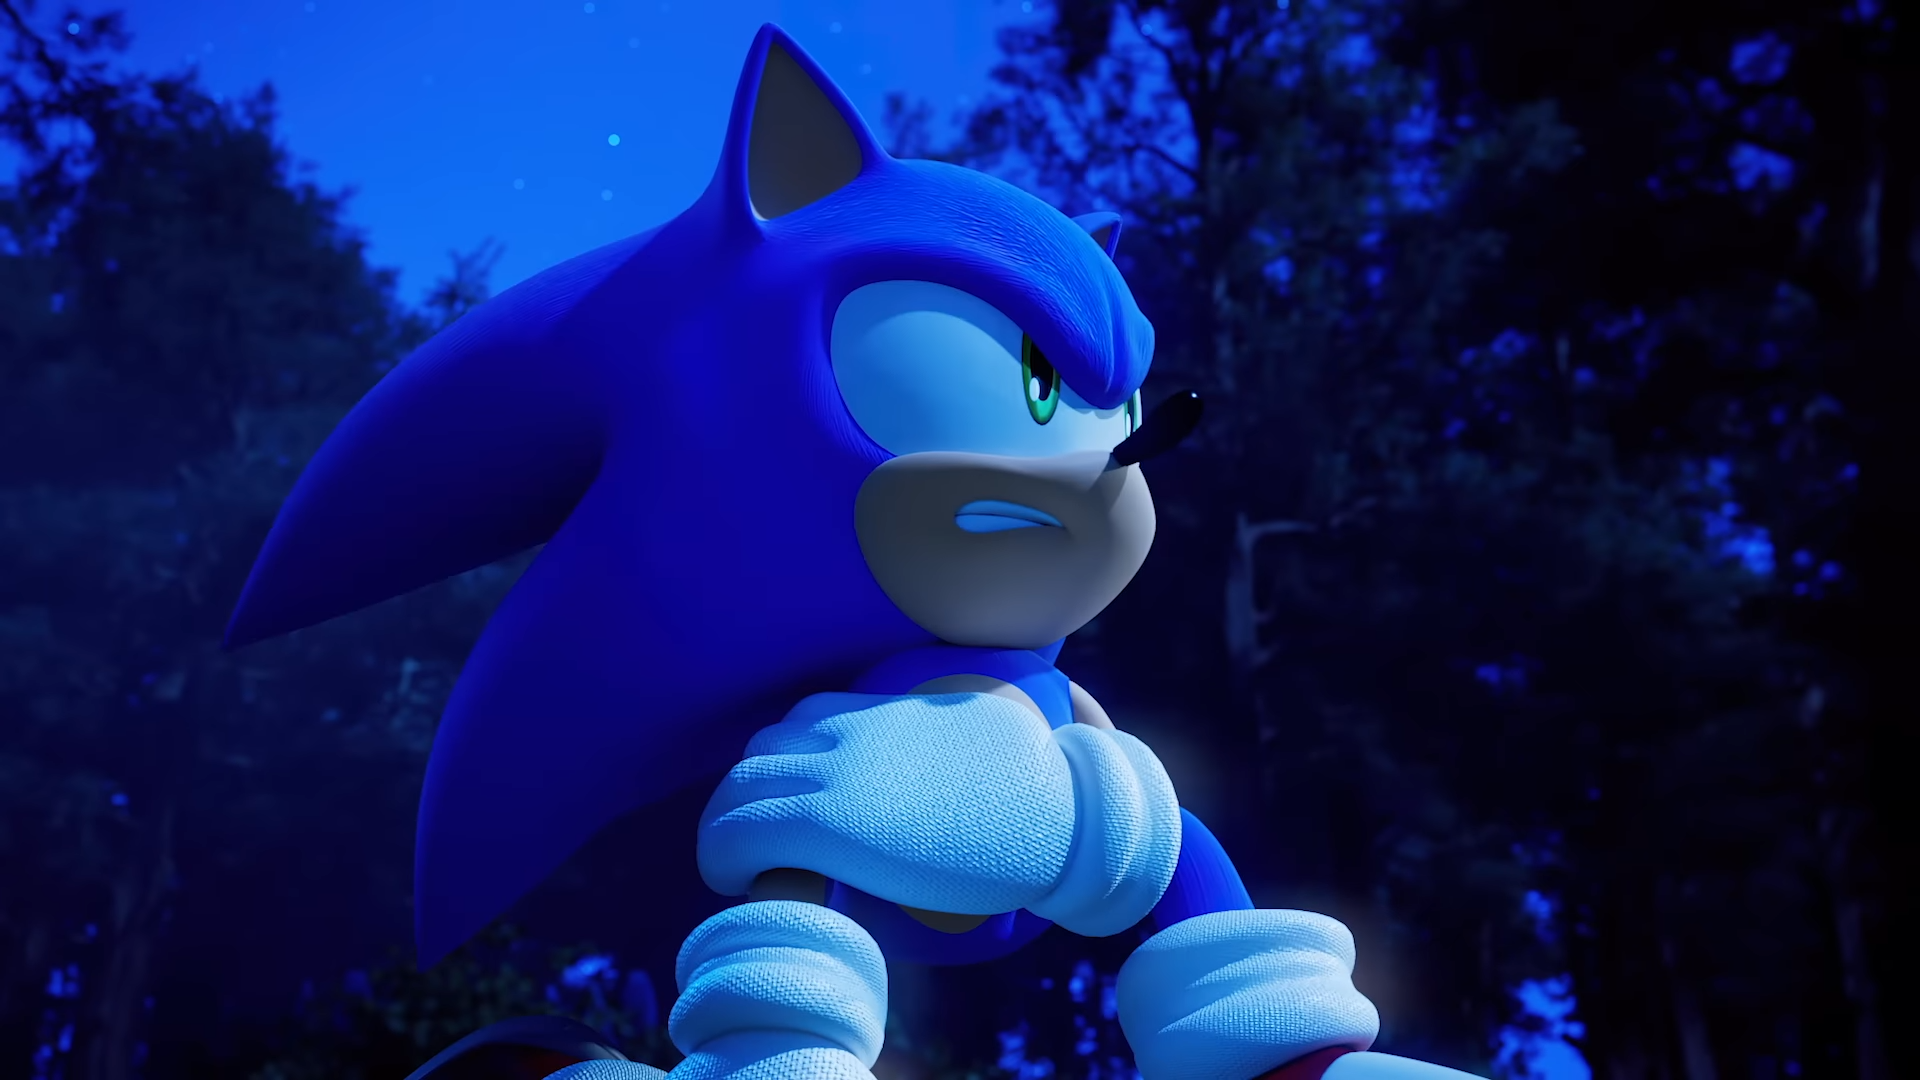 Ukuran file Sonic Frontiers hampir dua kali lebih besar dari Sonic
Forces di Switch